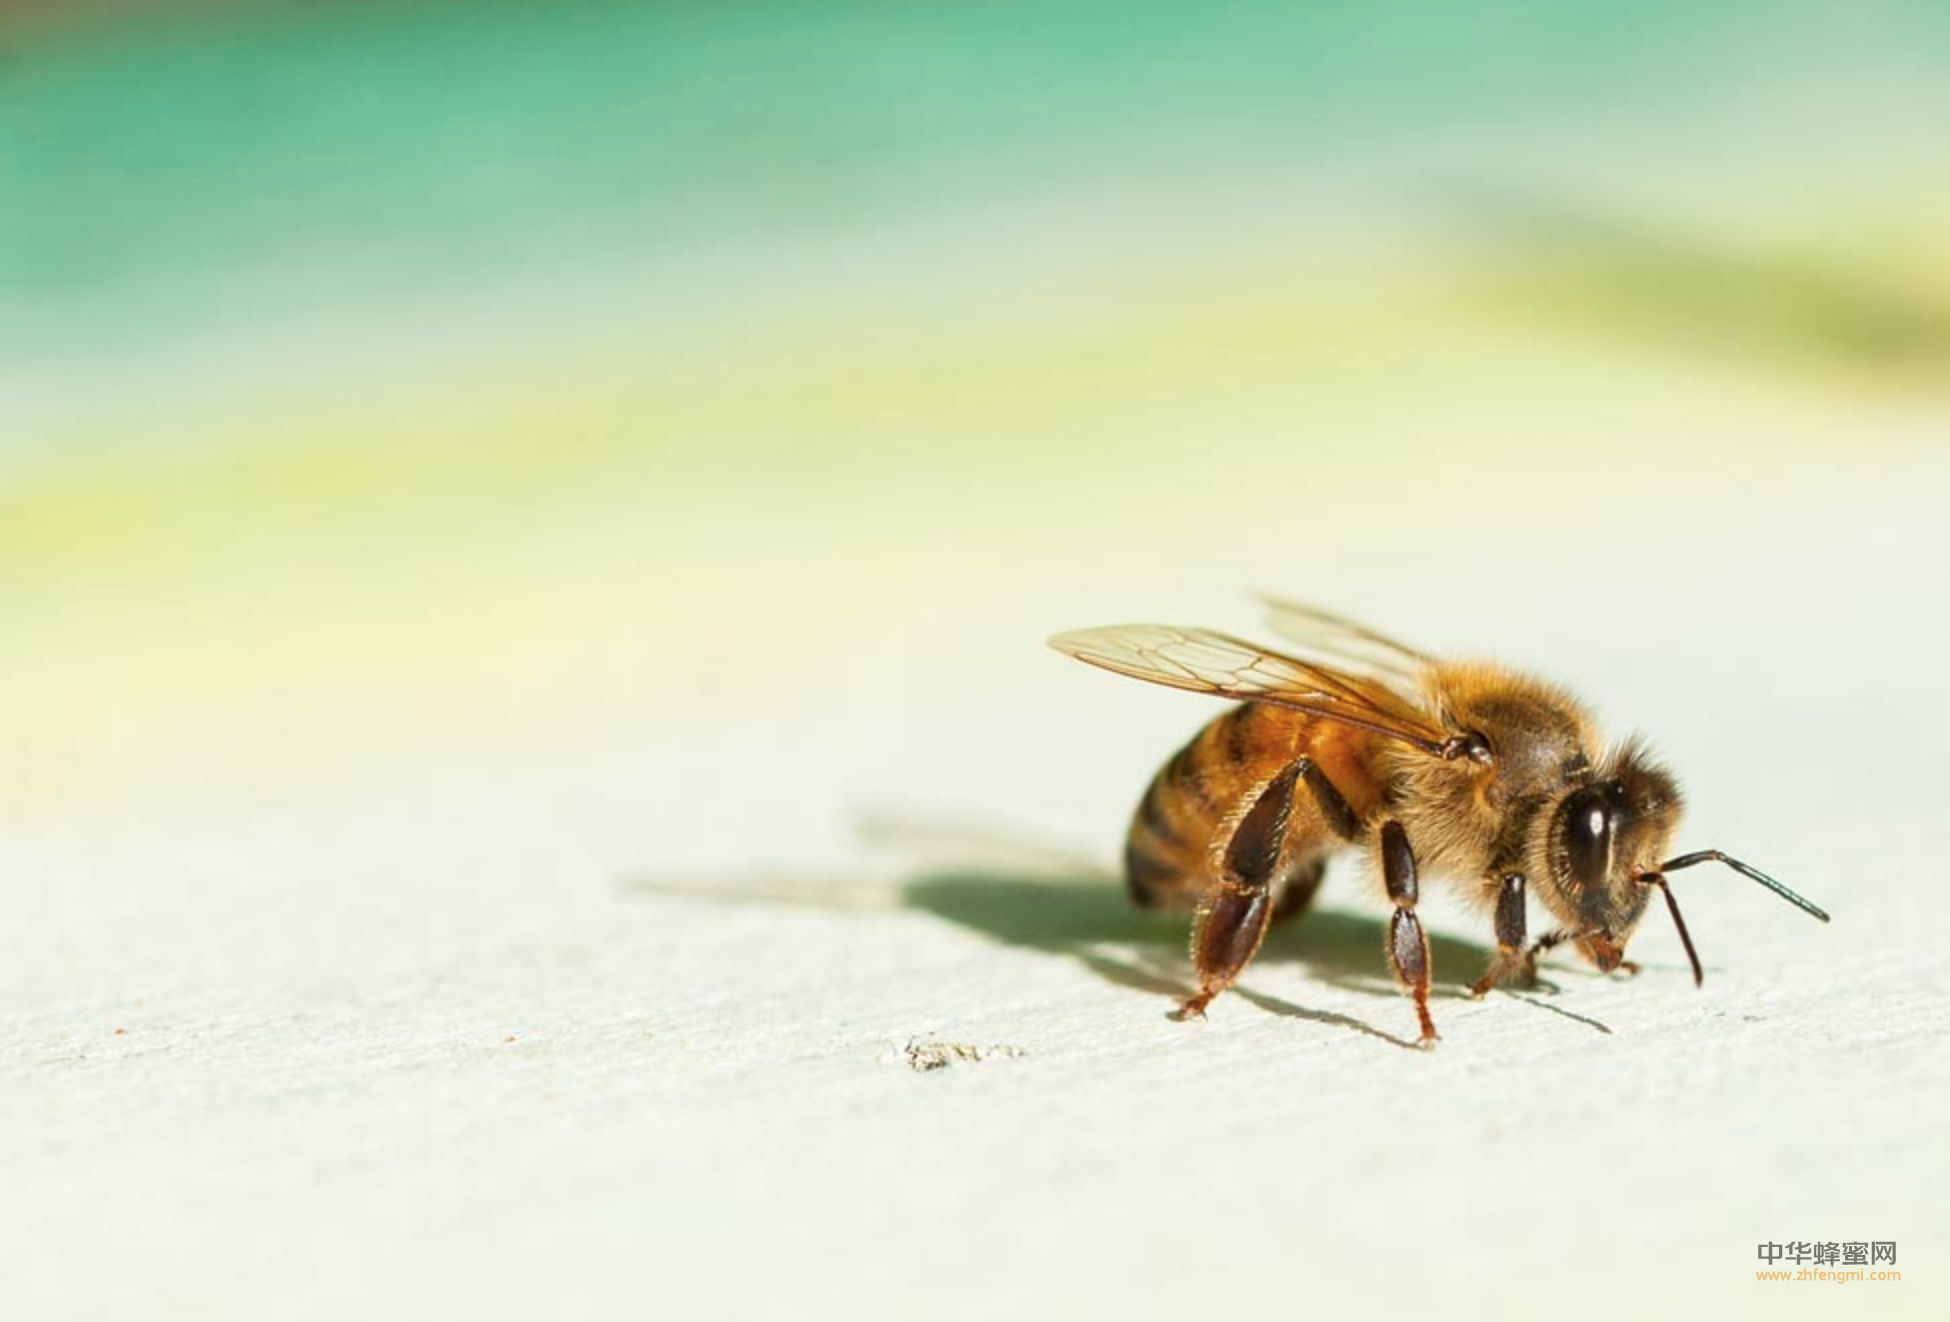 养蜂人 陈秀英 蜜蜂养殖 养蜂技术 蜂疗 蜂产品 蜂农 养蜂科技